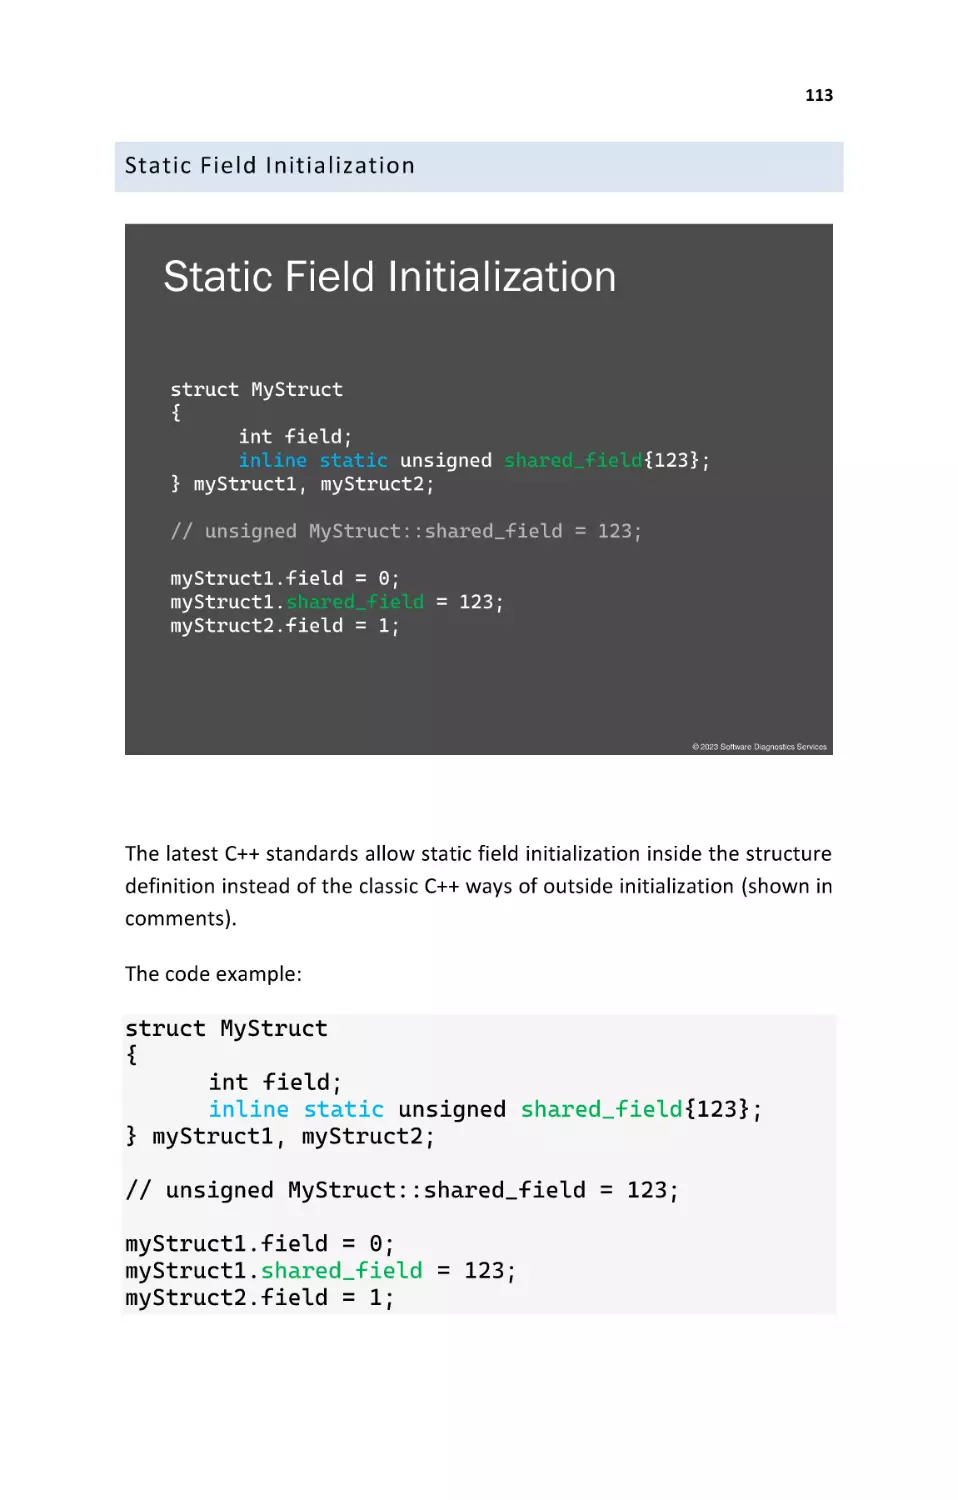 Static Field Initialization